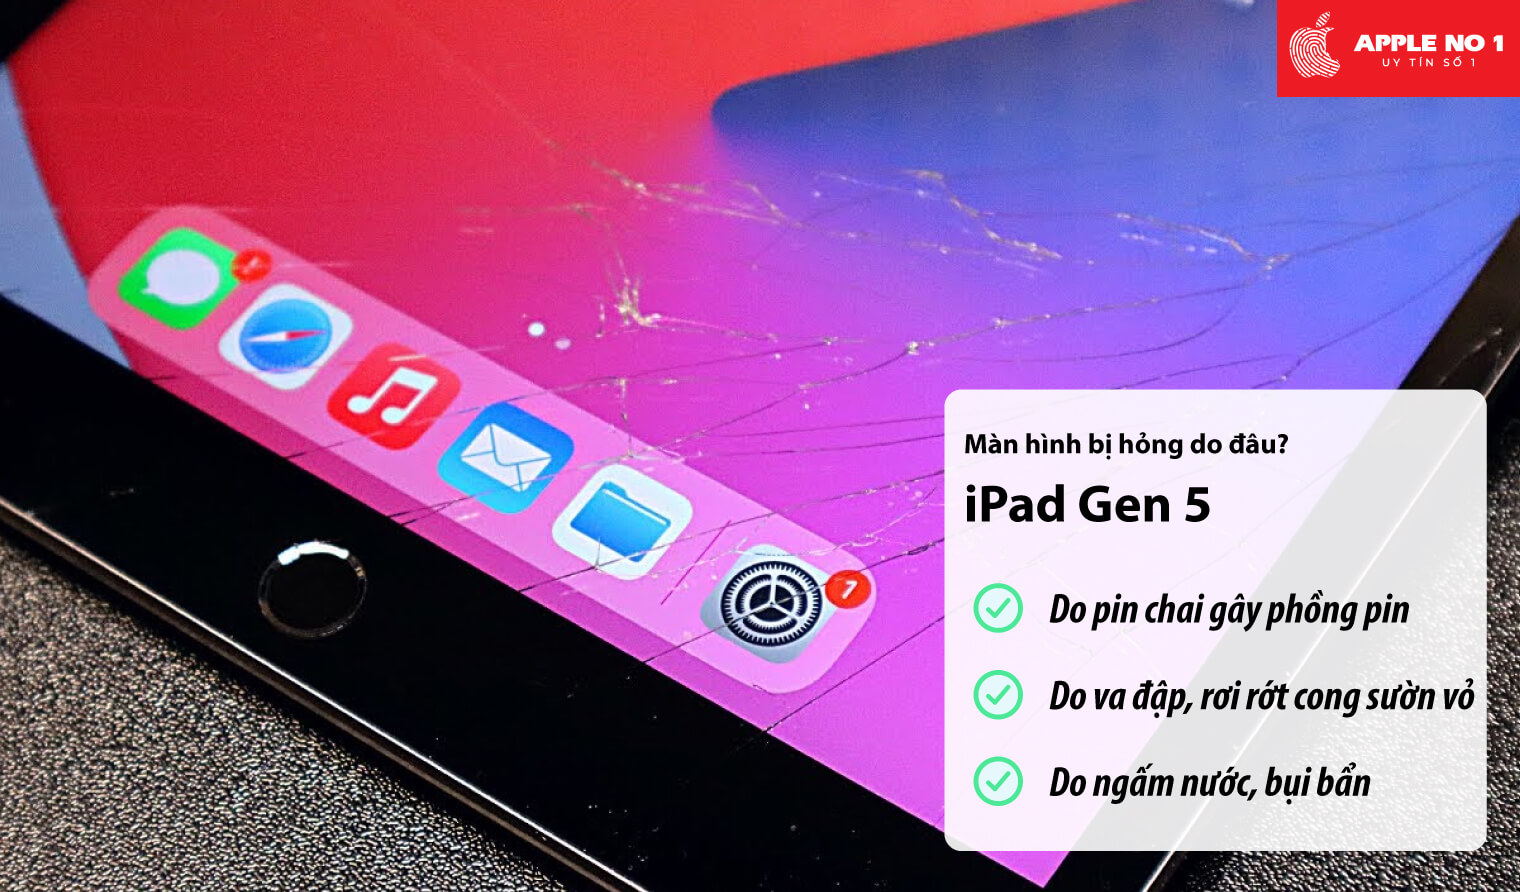 Màn hình iPad gen 5 bị hỏng do đâu?